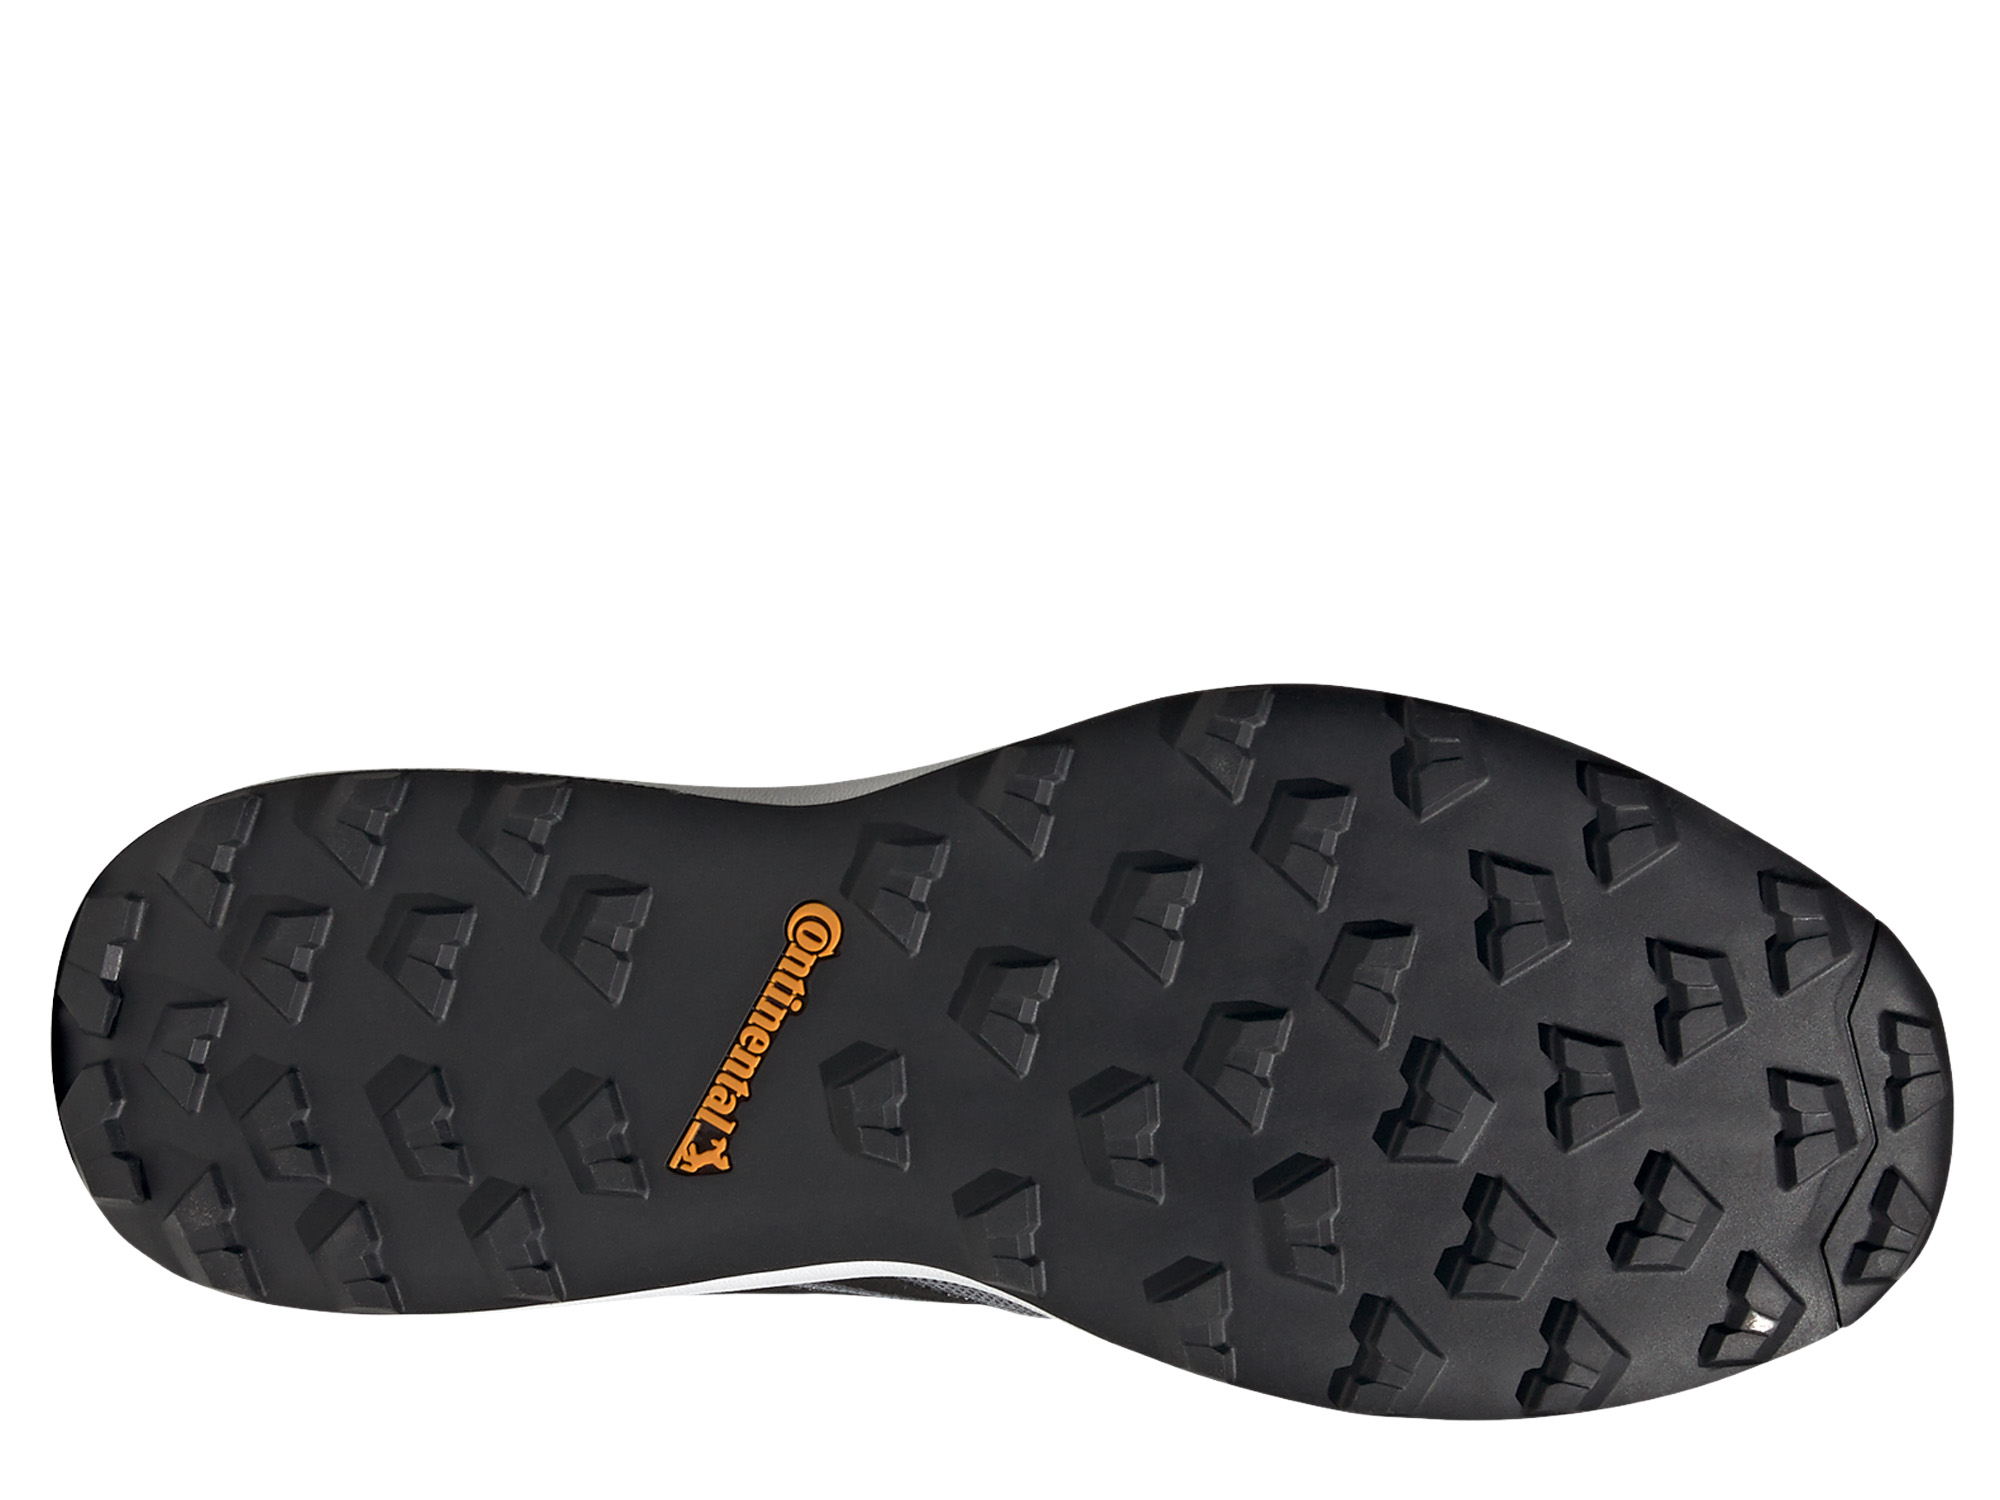 Adidas Terrex Agravic GTX Herren Trailrunning Schuh